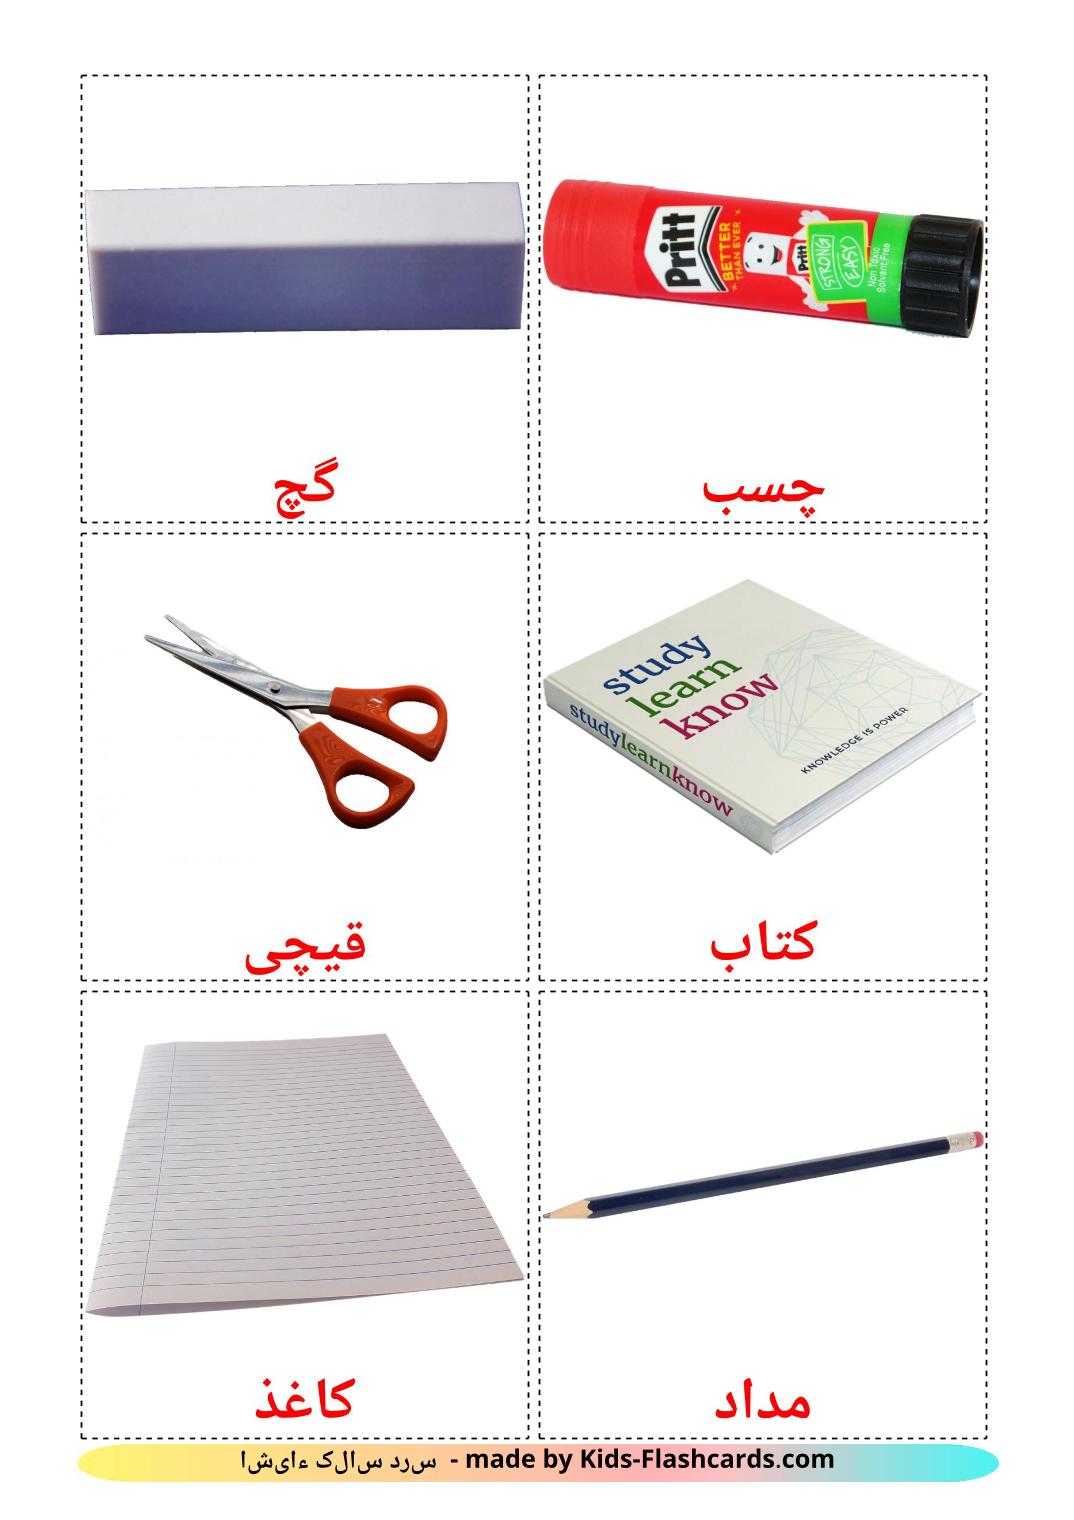 Objetos de sala de aula - 36 Flashcards persaes gratuitos para impressão